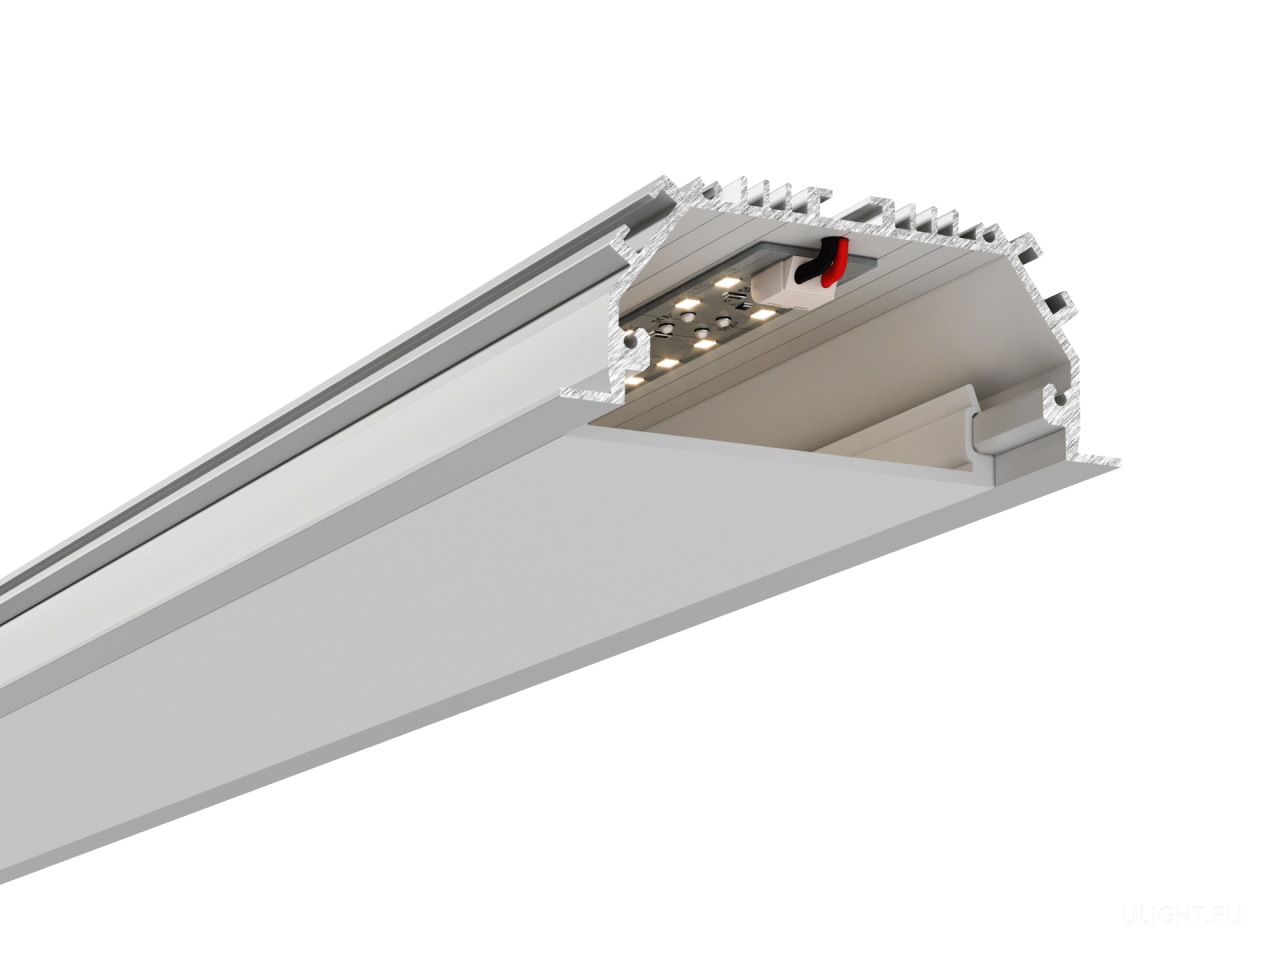 Алюминиевый корпус для встраиваемого монтажа — 75(89)х35x0-2500мм.
Мощность до 64Вт (26 Вт/м) — обеспечивает освещение площади до 10м².
Широкая массивная линия света. Возможна установка в натяжной потолок, ГКЛ и бетон.